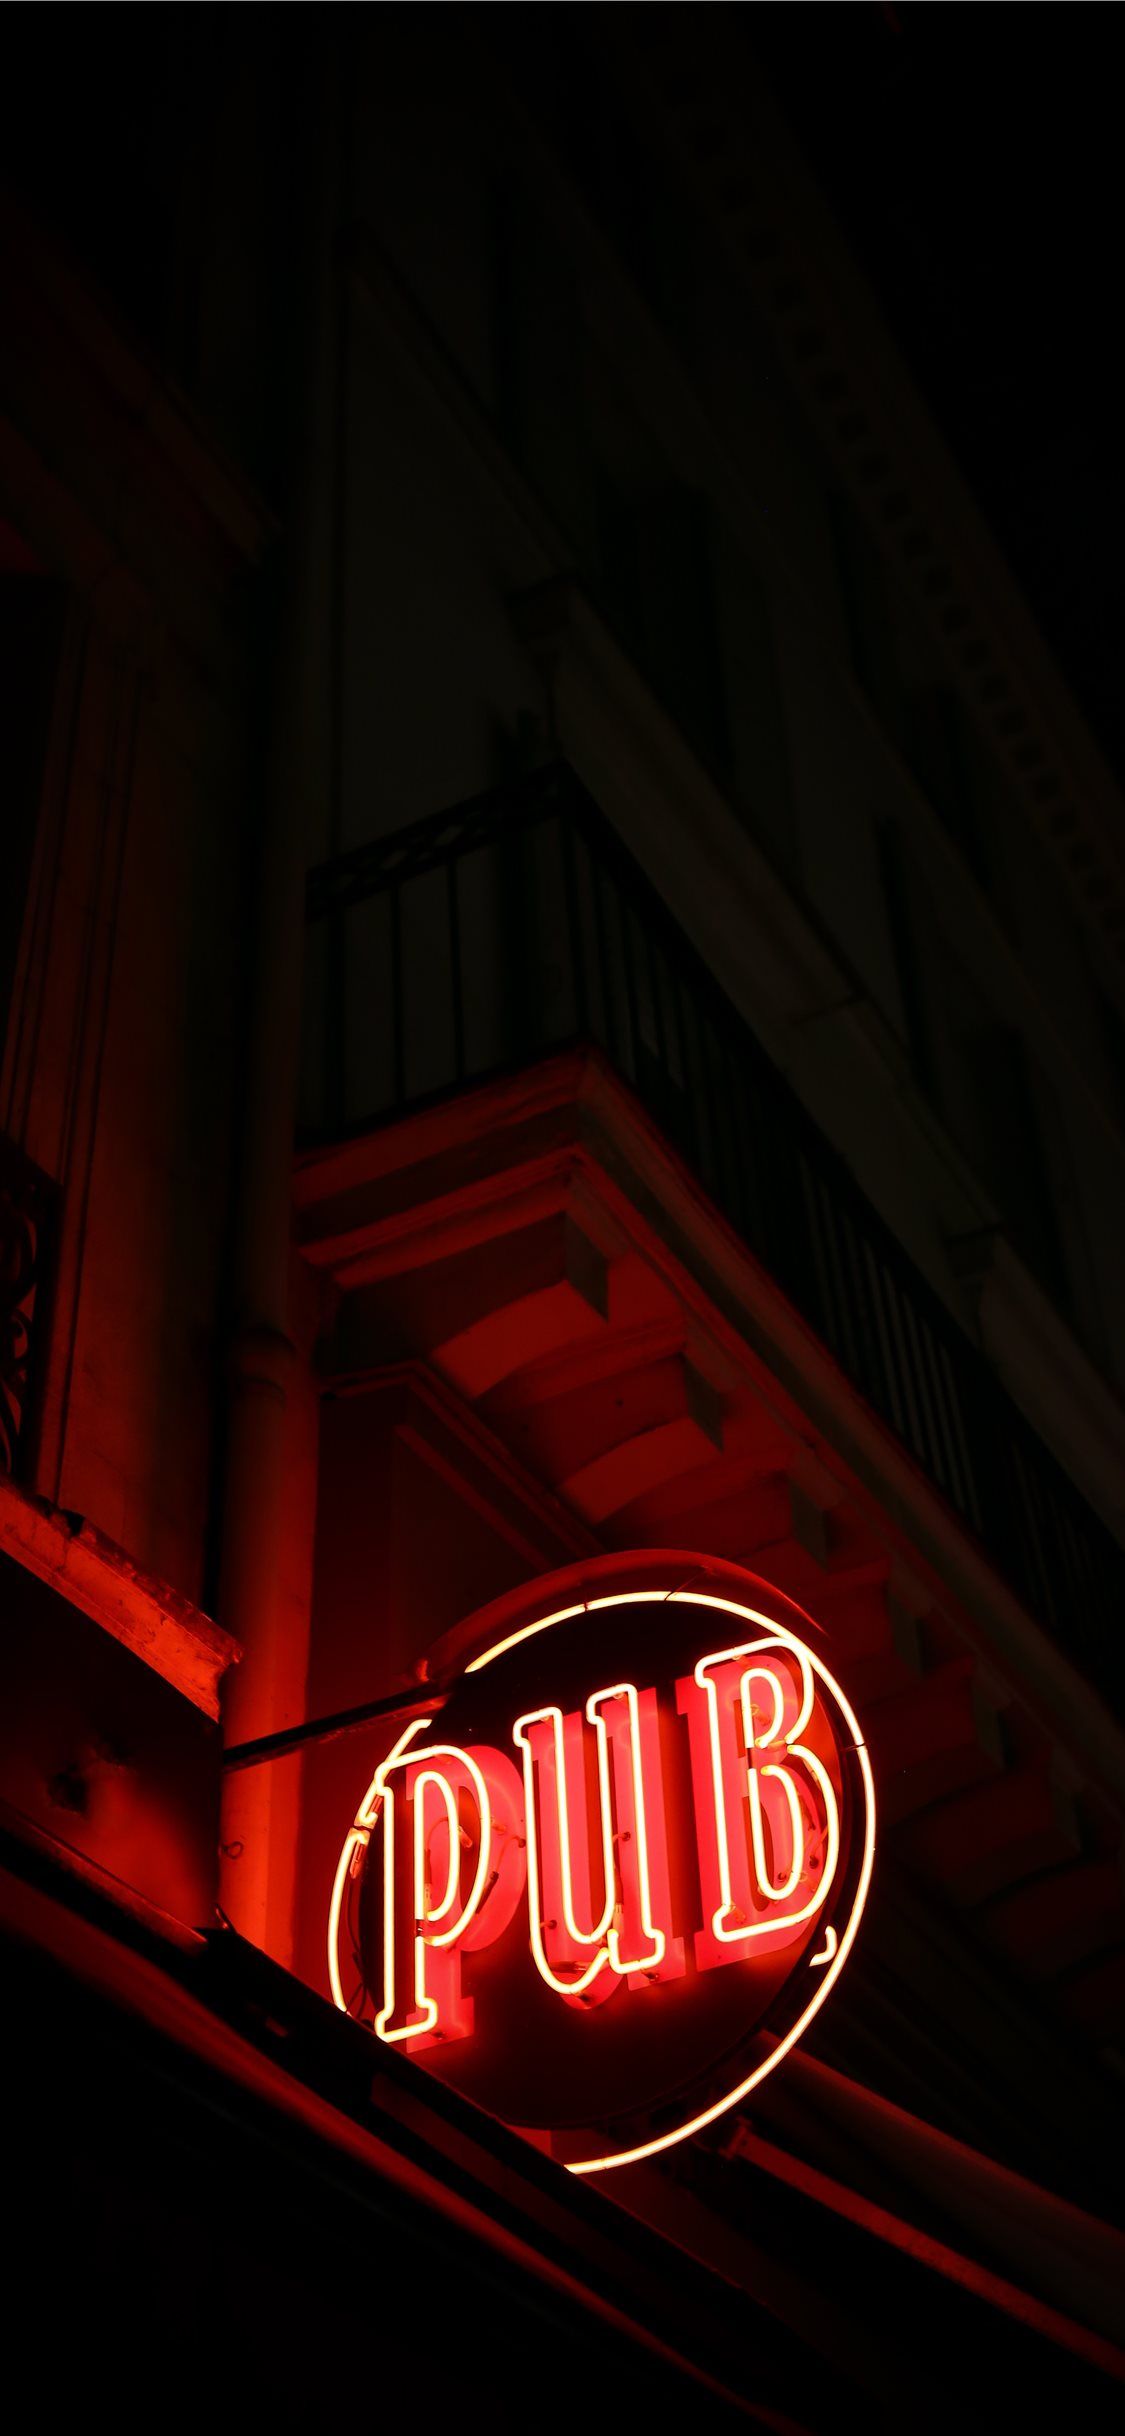 Last Pub In Paris iPhone X Wallpaper Sign